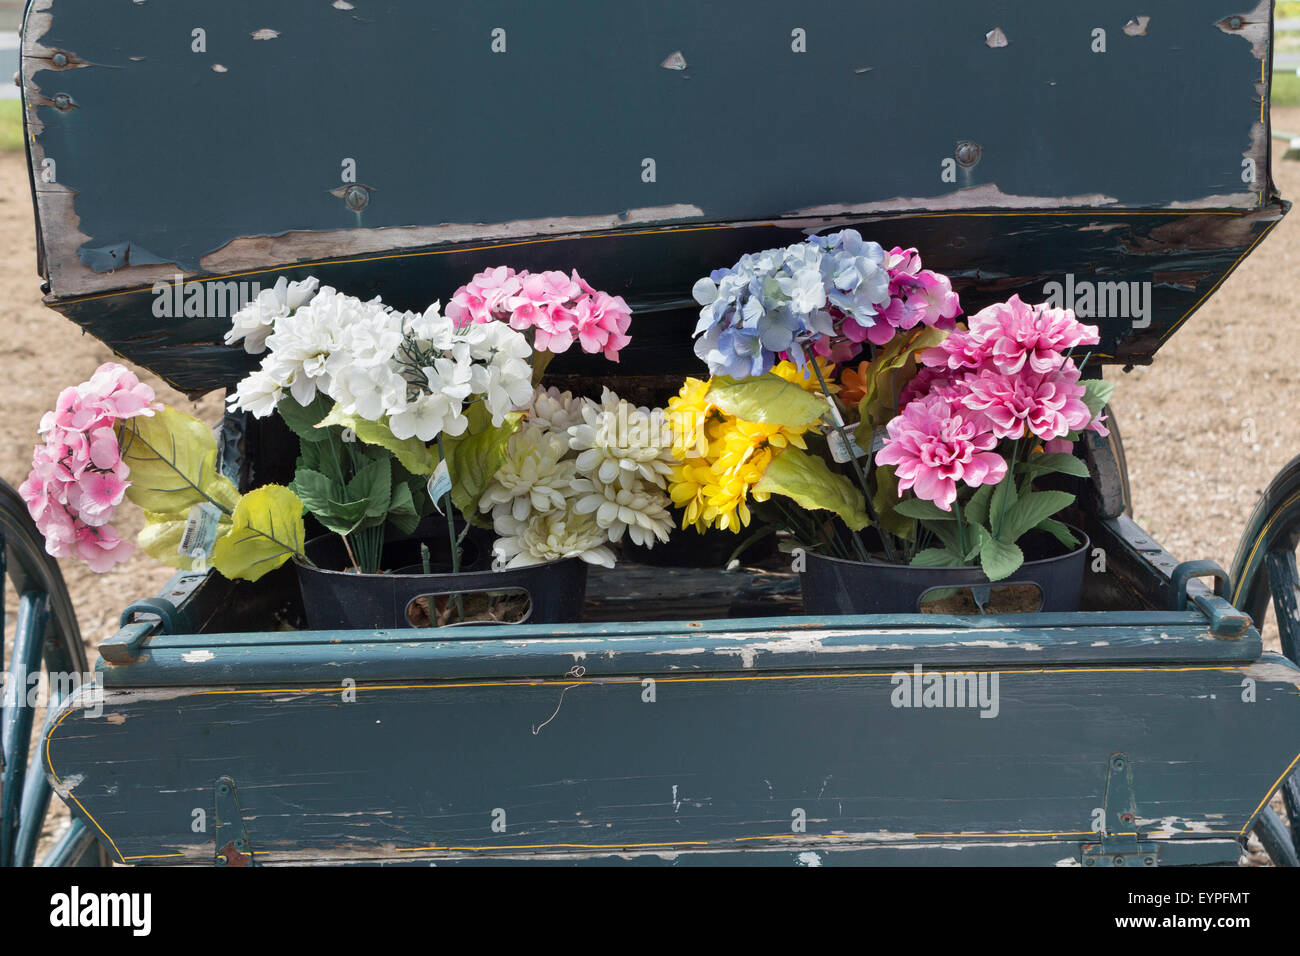 Les fleurs décorent l'arrière d'un vieux chariot antique Banque D'Images